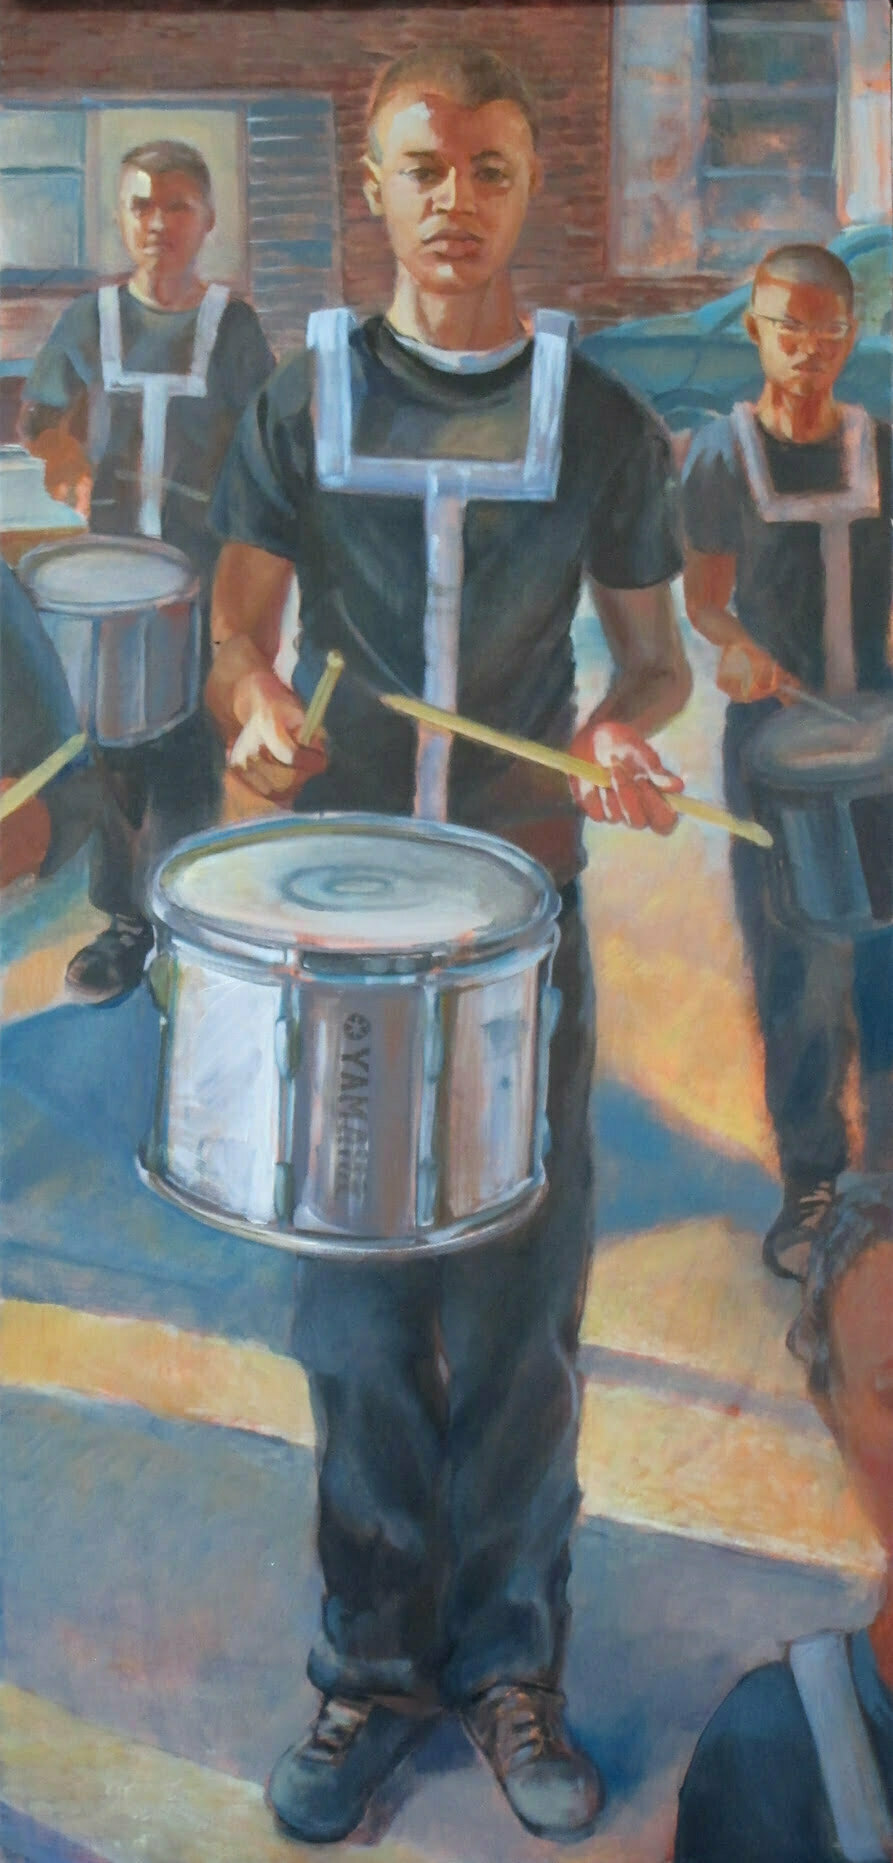 drummer900